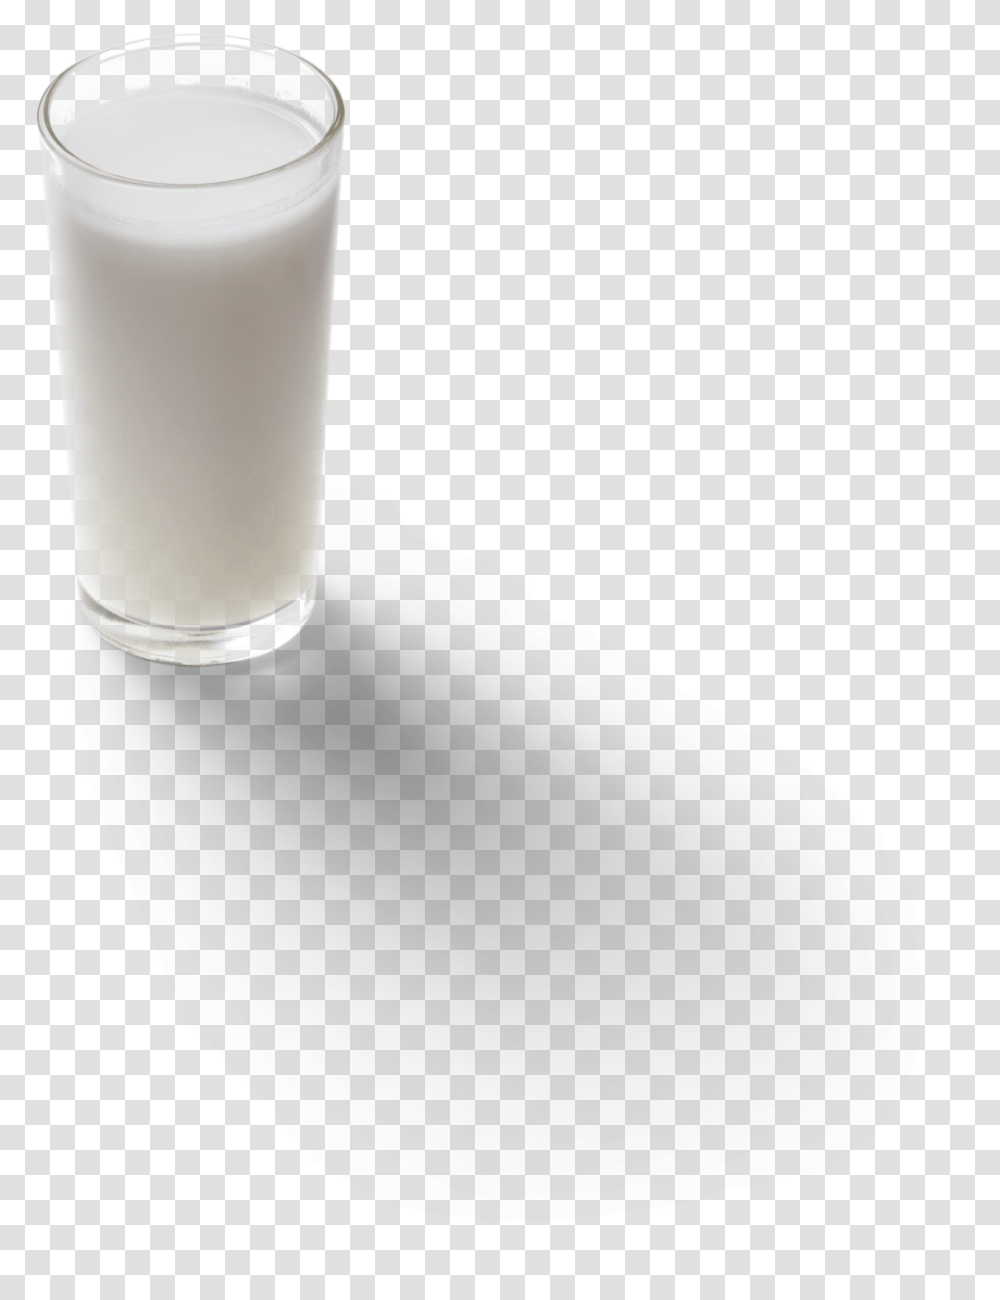 Coconut Milk Graphic Asset Raw Milk, Beverage, Drink, Shaker, Bottle Transparent Png